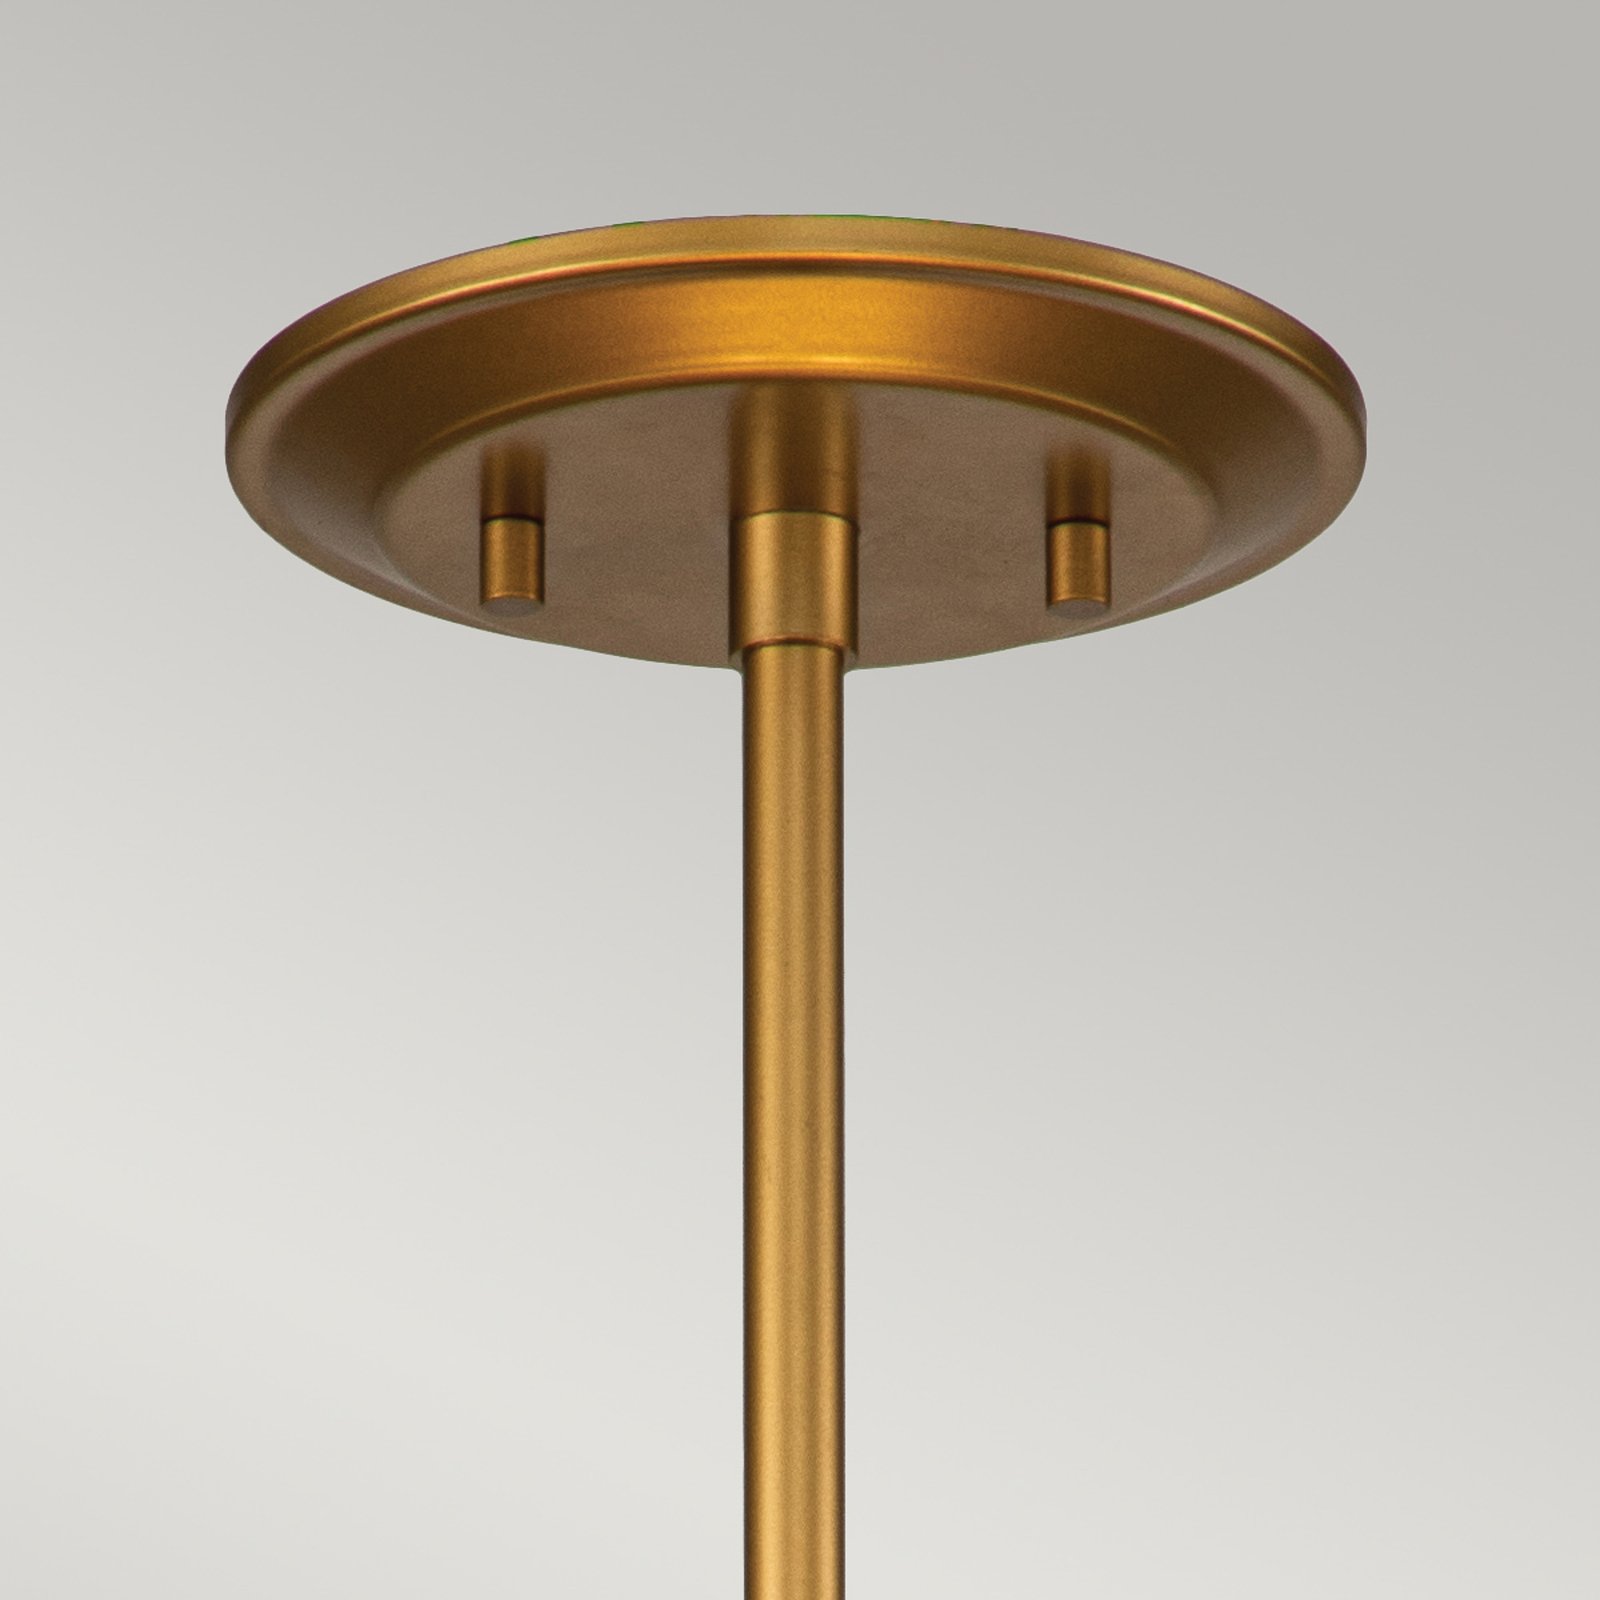 Ziggy viseča luč, Ø 40 cm, zlata